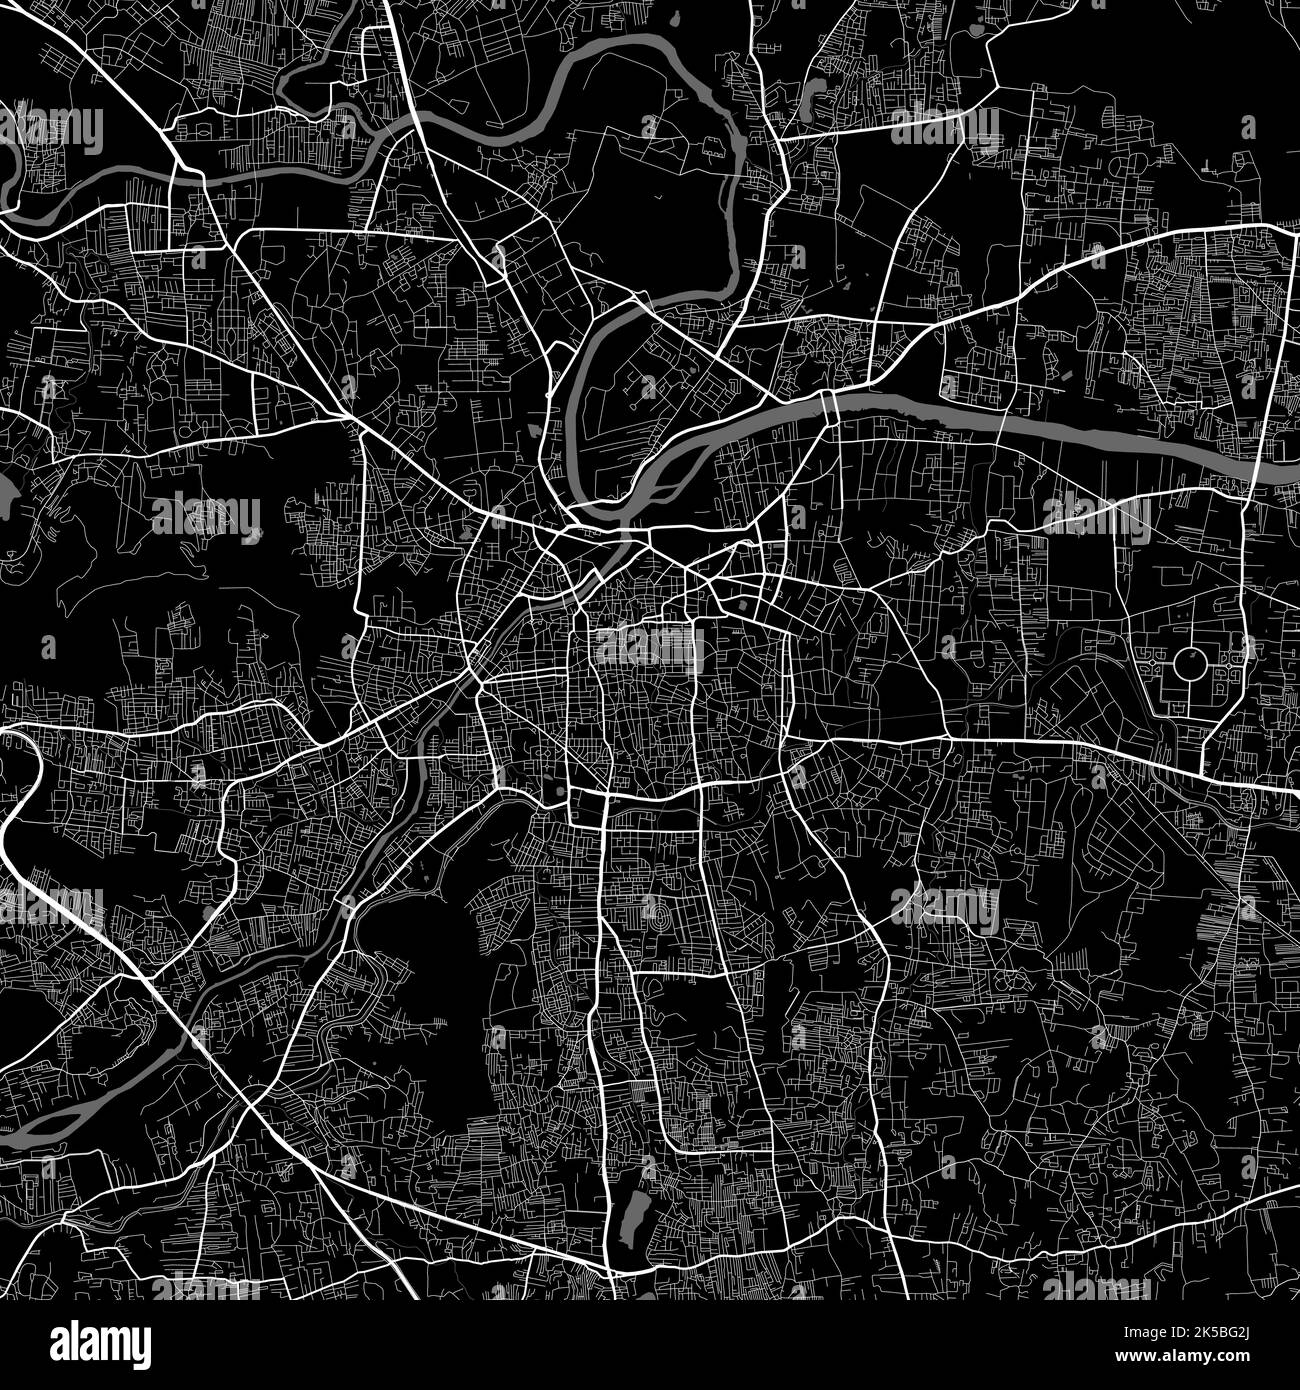 Stadtplan von Pune. Urbanes Schwarz-Weiß-Poster. Straßenkarte mit Ansicht der Metropolregion. Stock Vektor